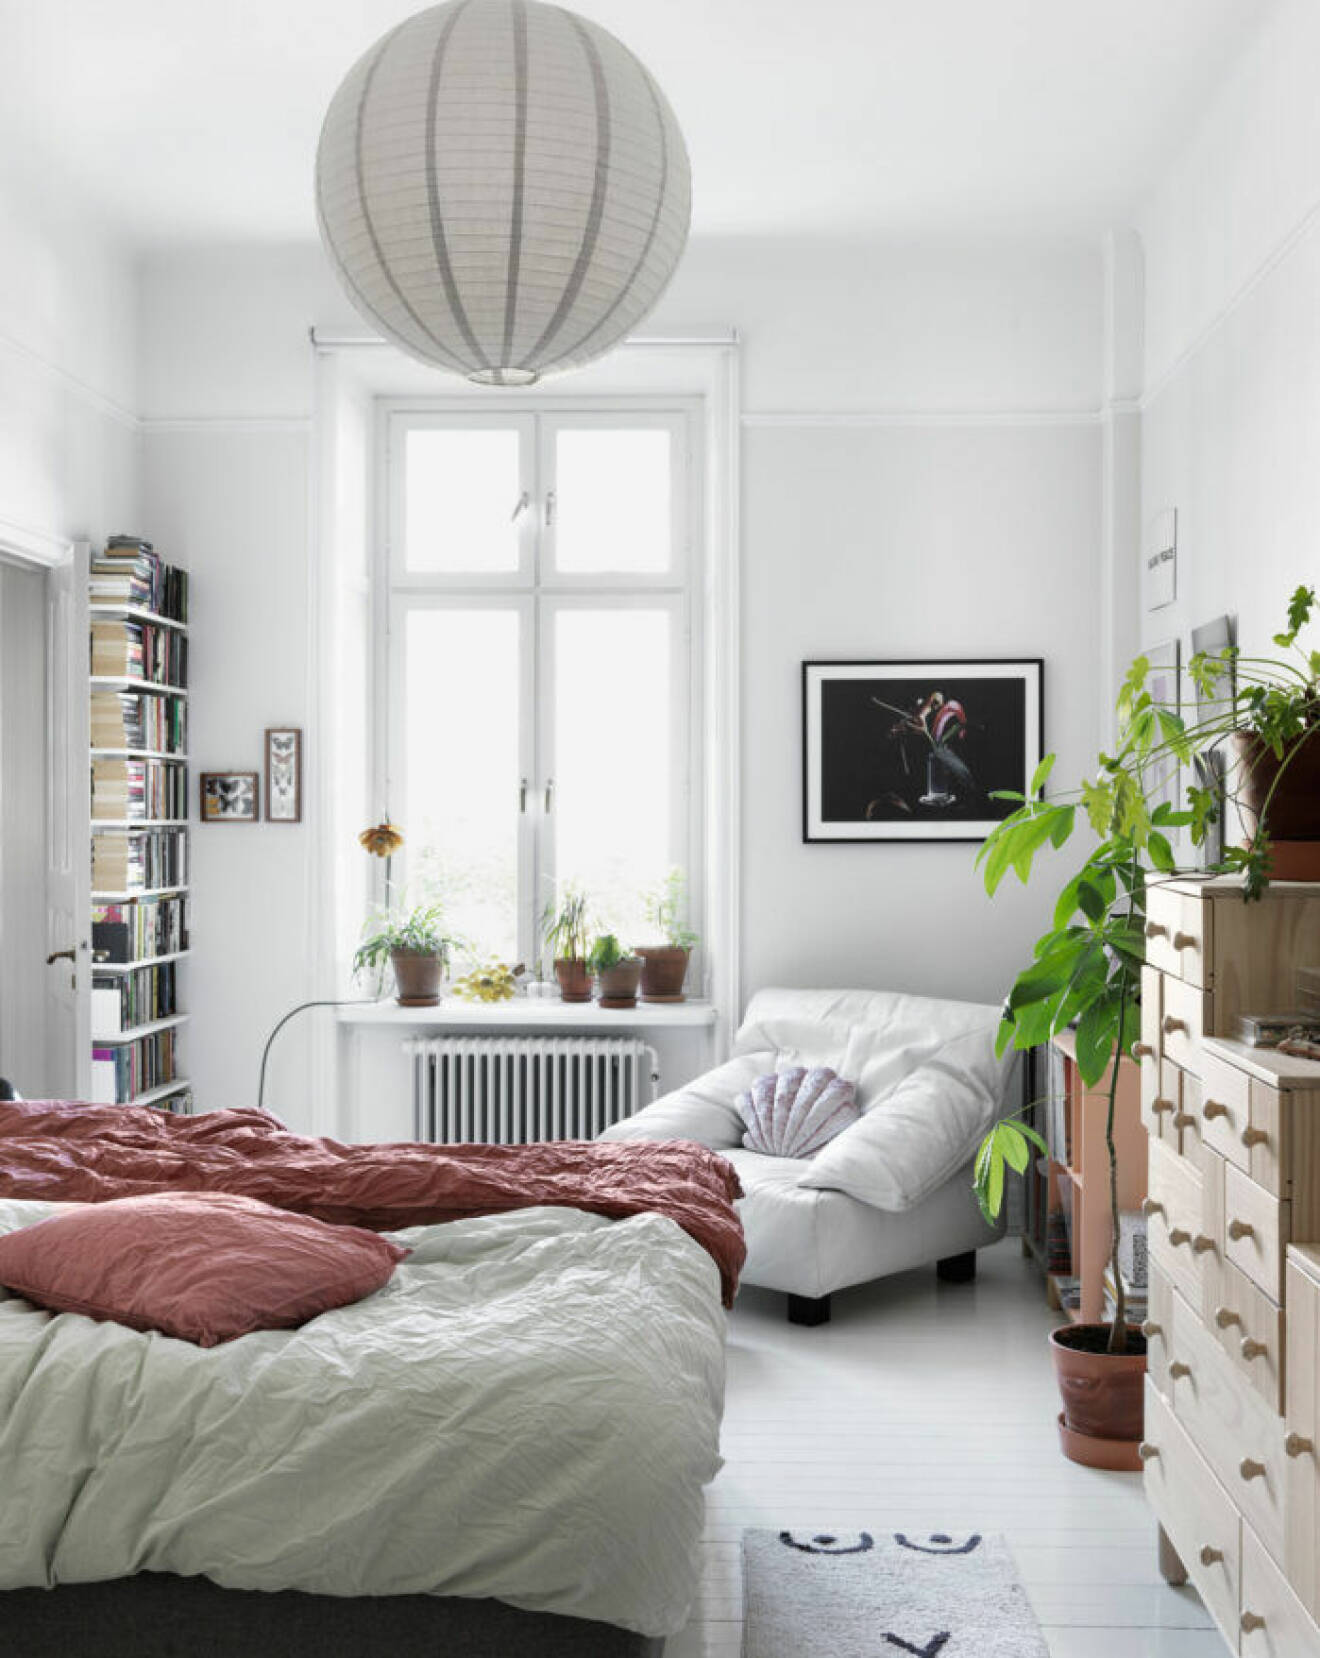 Vita och rosa toner i sovrummet hos modedesignern på Södermalm i Stockholm